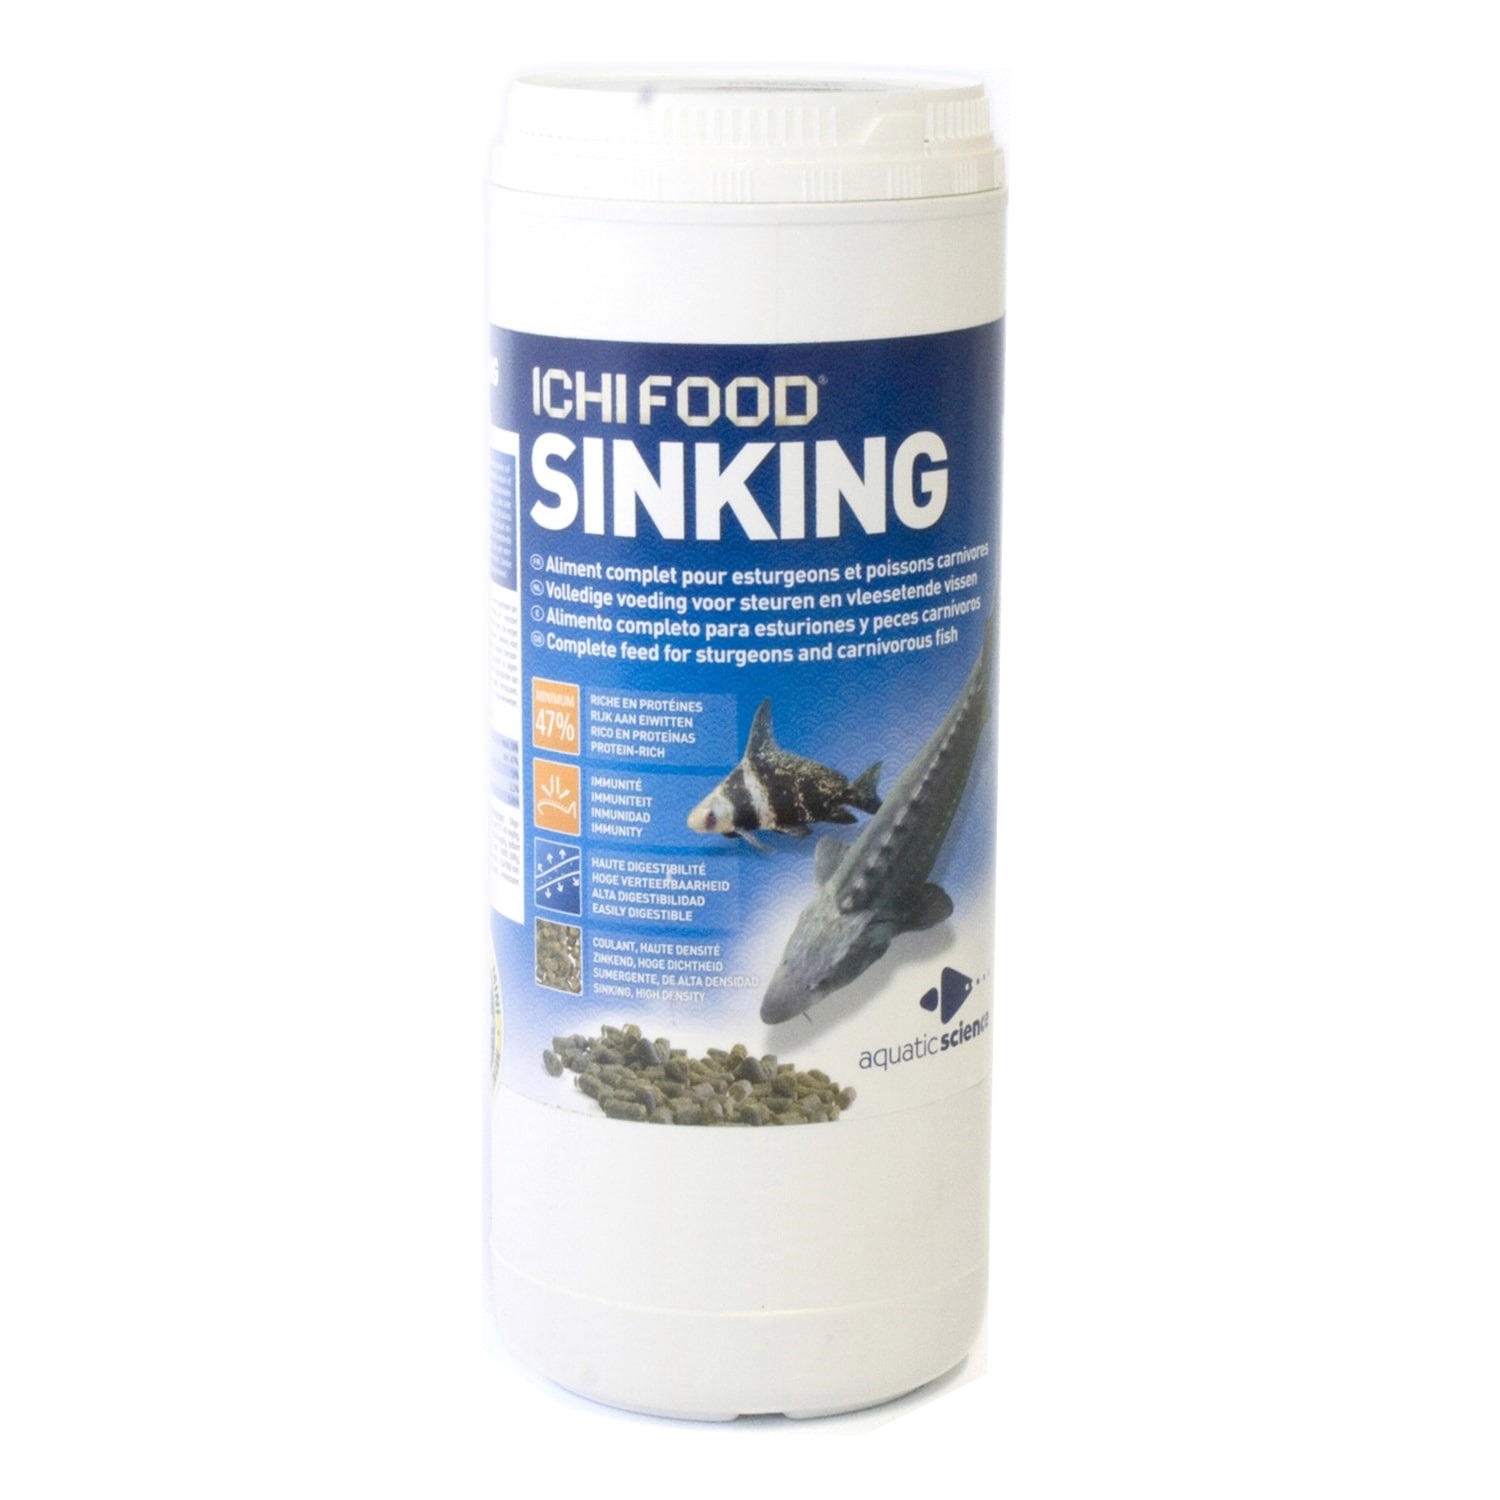 ICHI FOOD Sinking 3 mm 1 Kg aliment complet pour esturgeons et poissons carnivores d\'eau froide